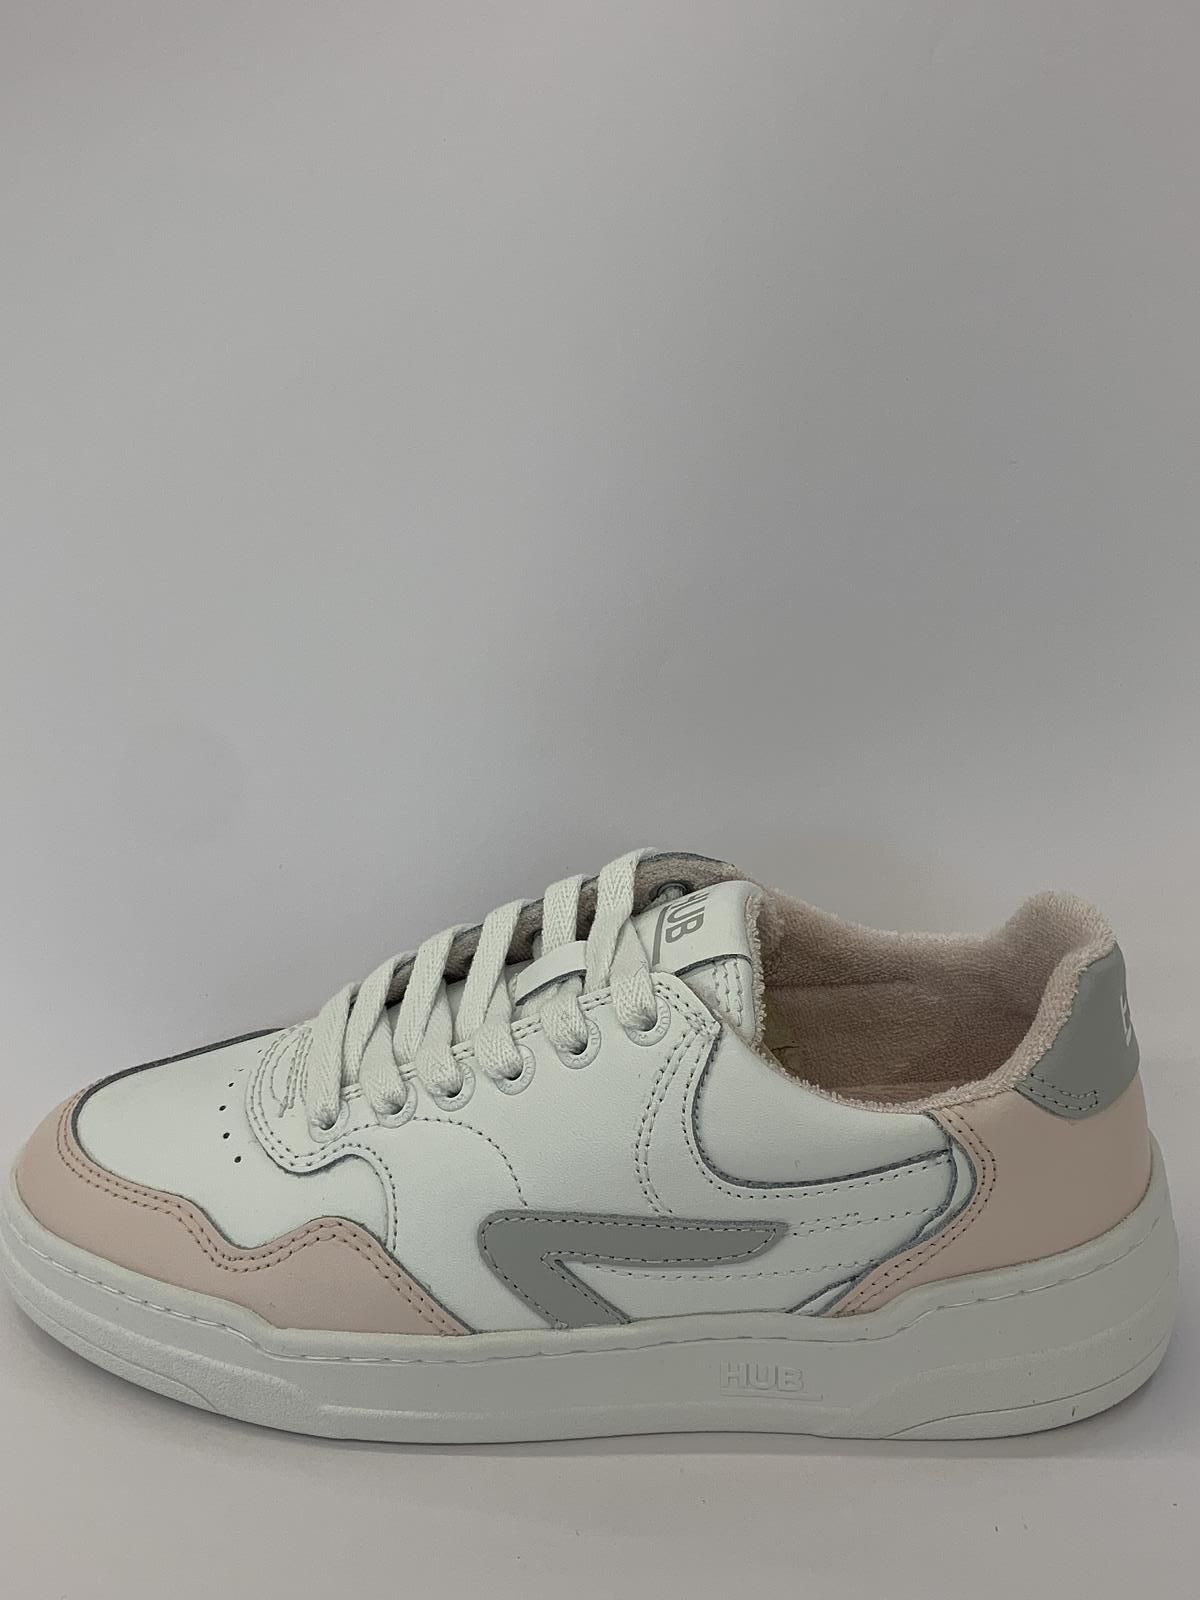 HUB Sneaker Wit+kleur dames (Sneaker Hub Grijs - W6001) - Schoenen Luca